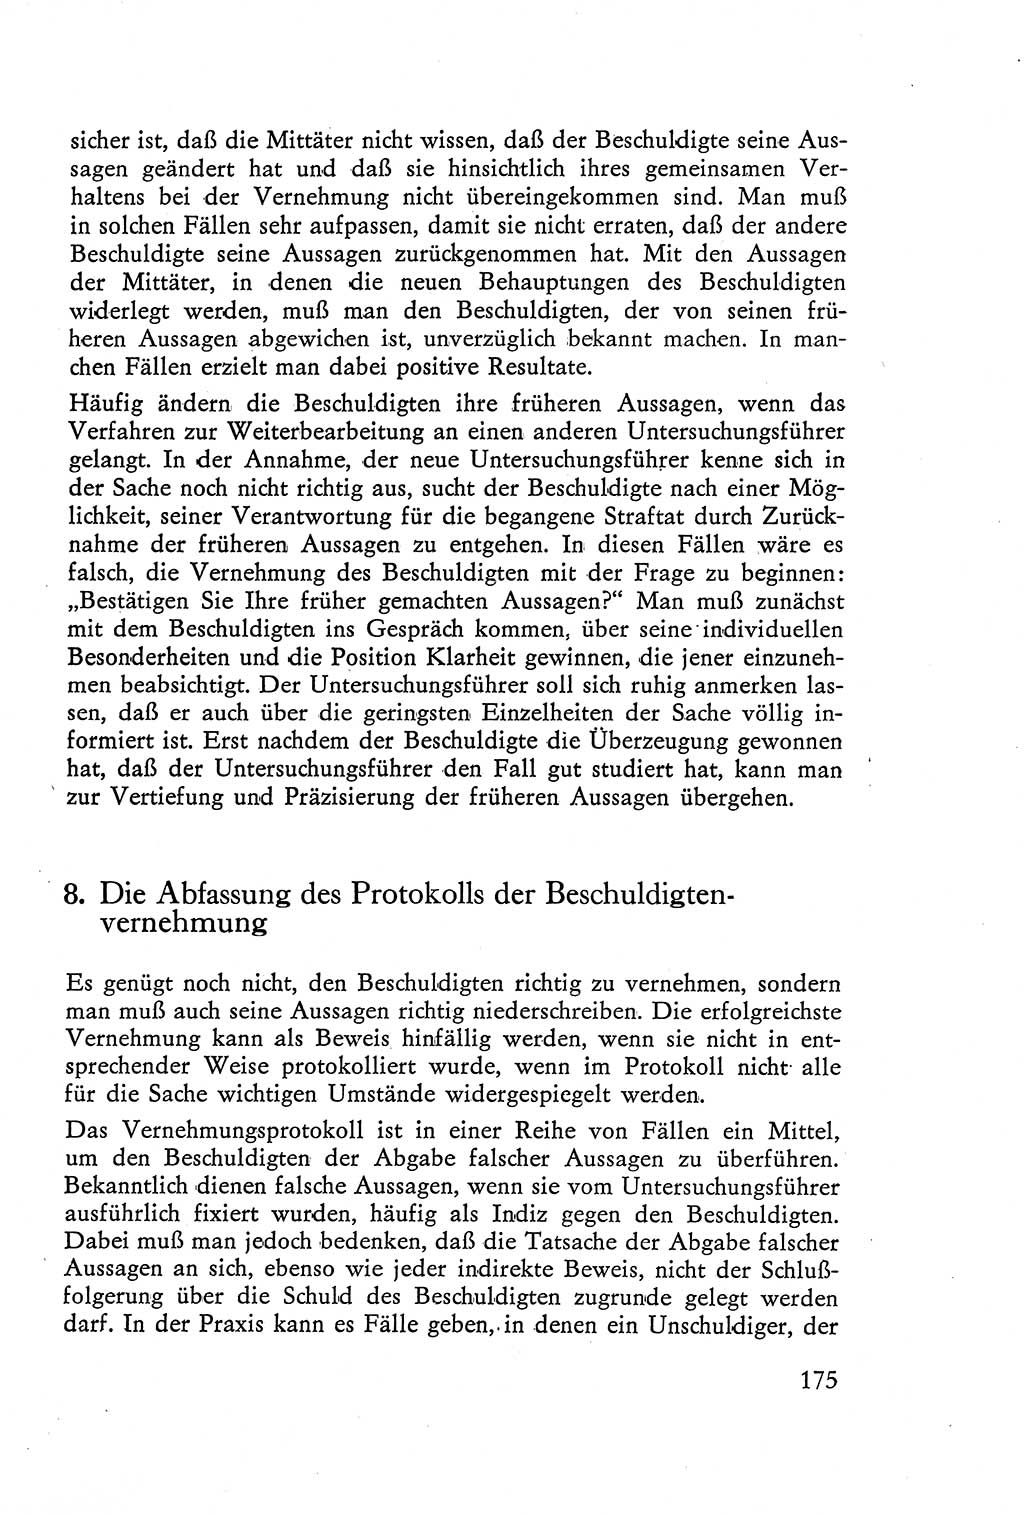 Die Vernehmung [Deutsche Demokratische Republik (DDR)] 1960, Seite 175 (Vern. DDR 1960, S. 175)